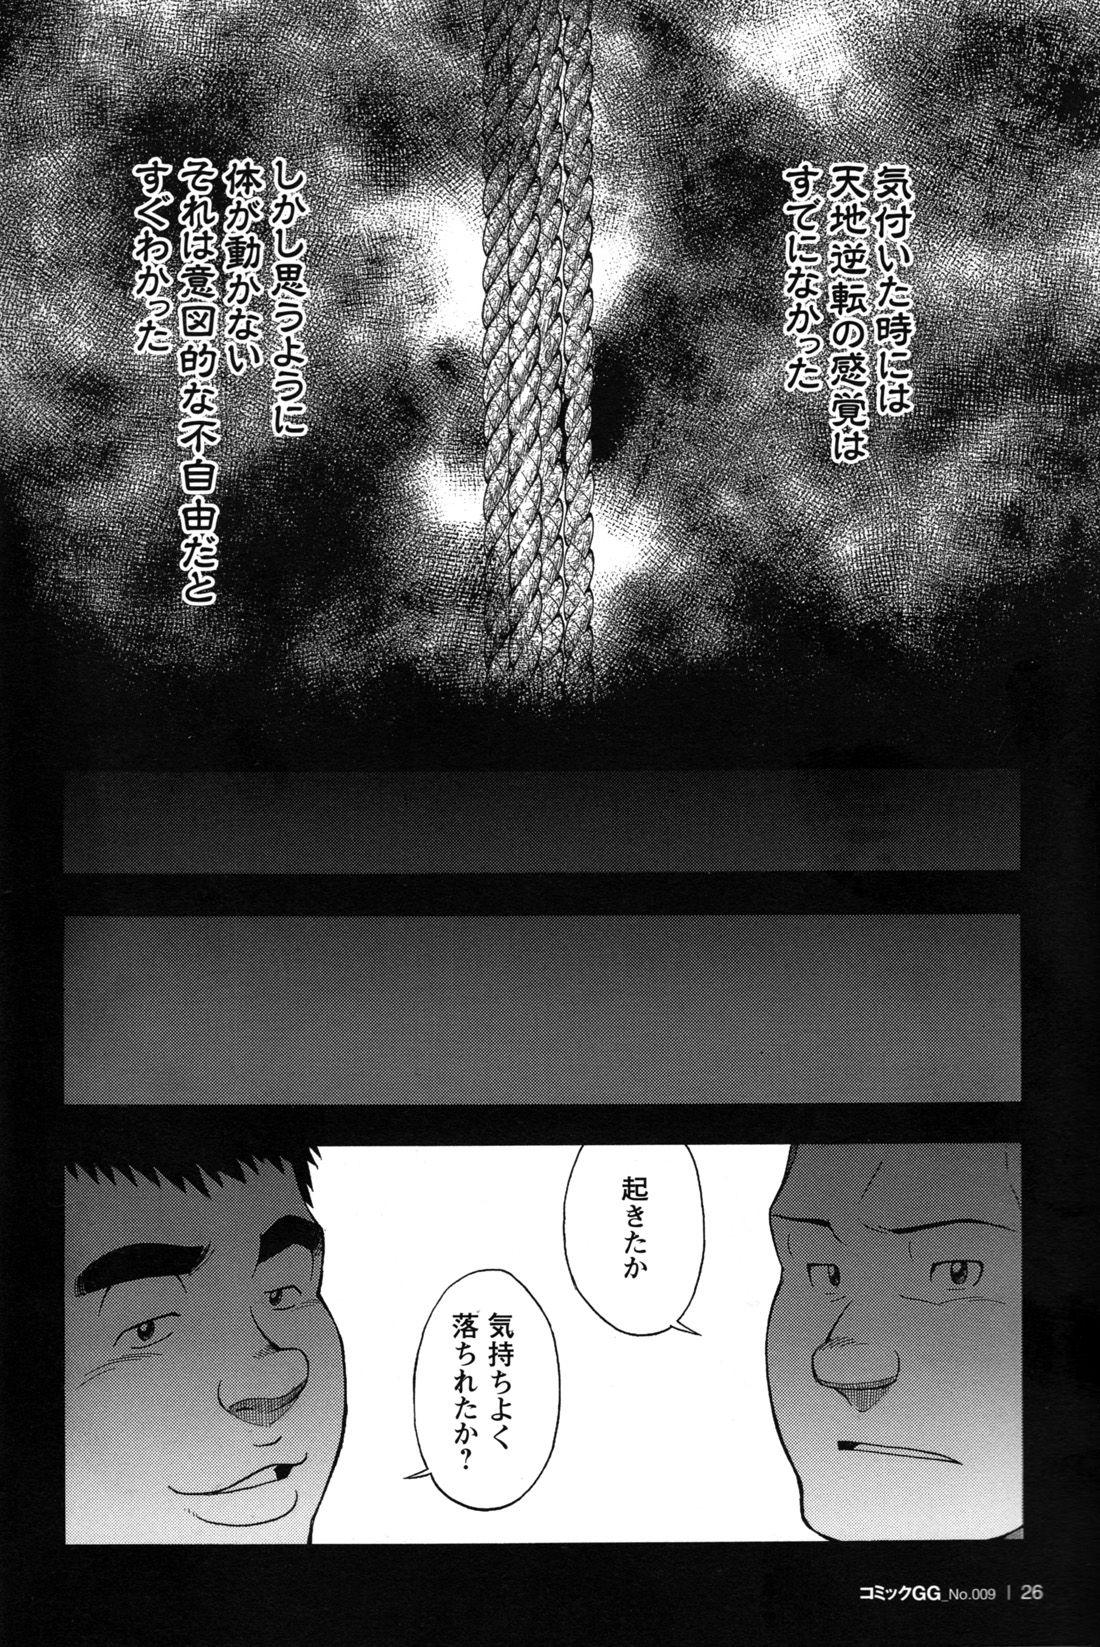 Comic G-men Gaho No.09 Gacchibi Zeme 26